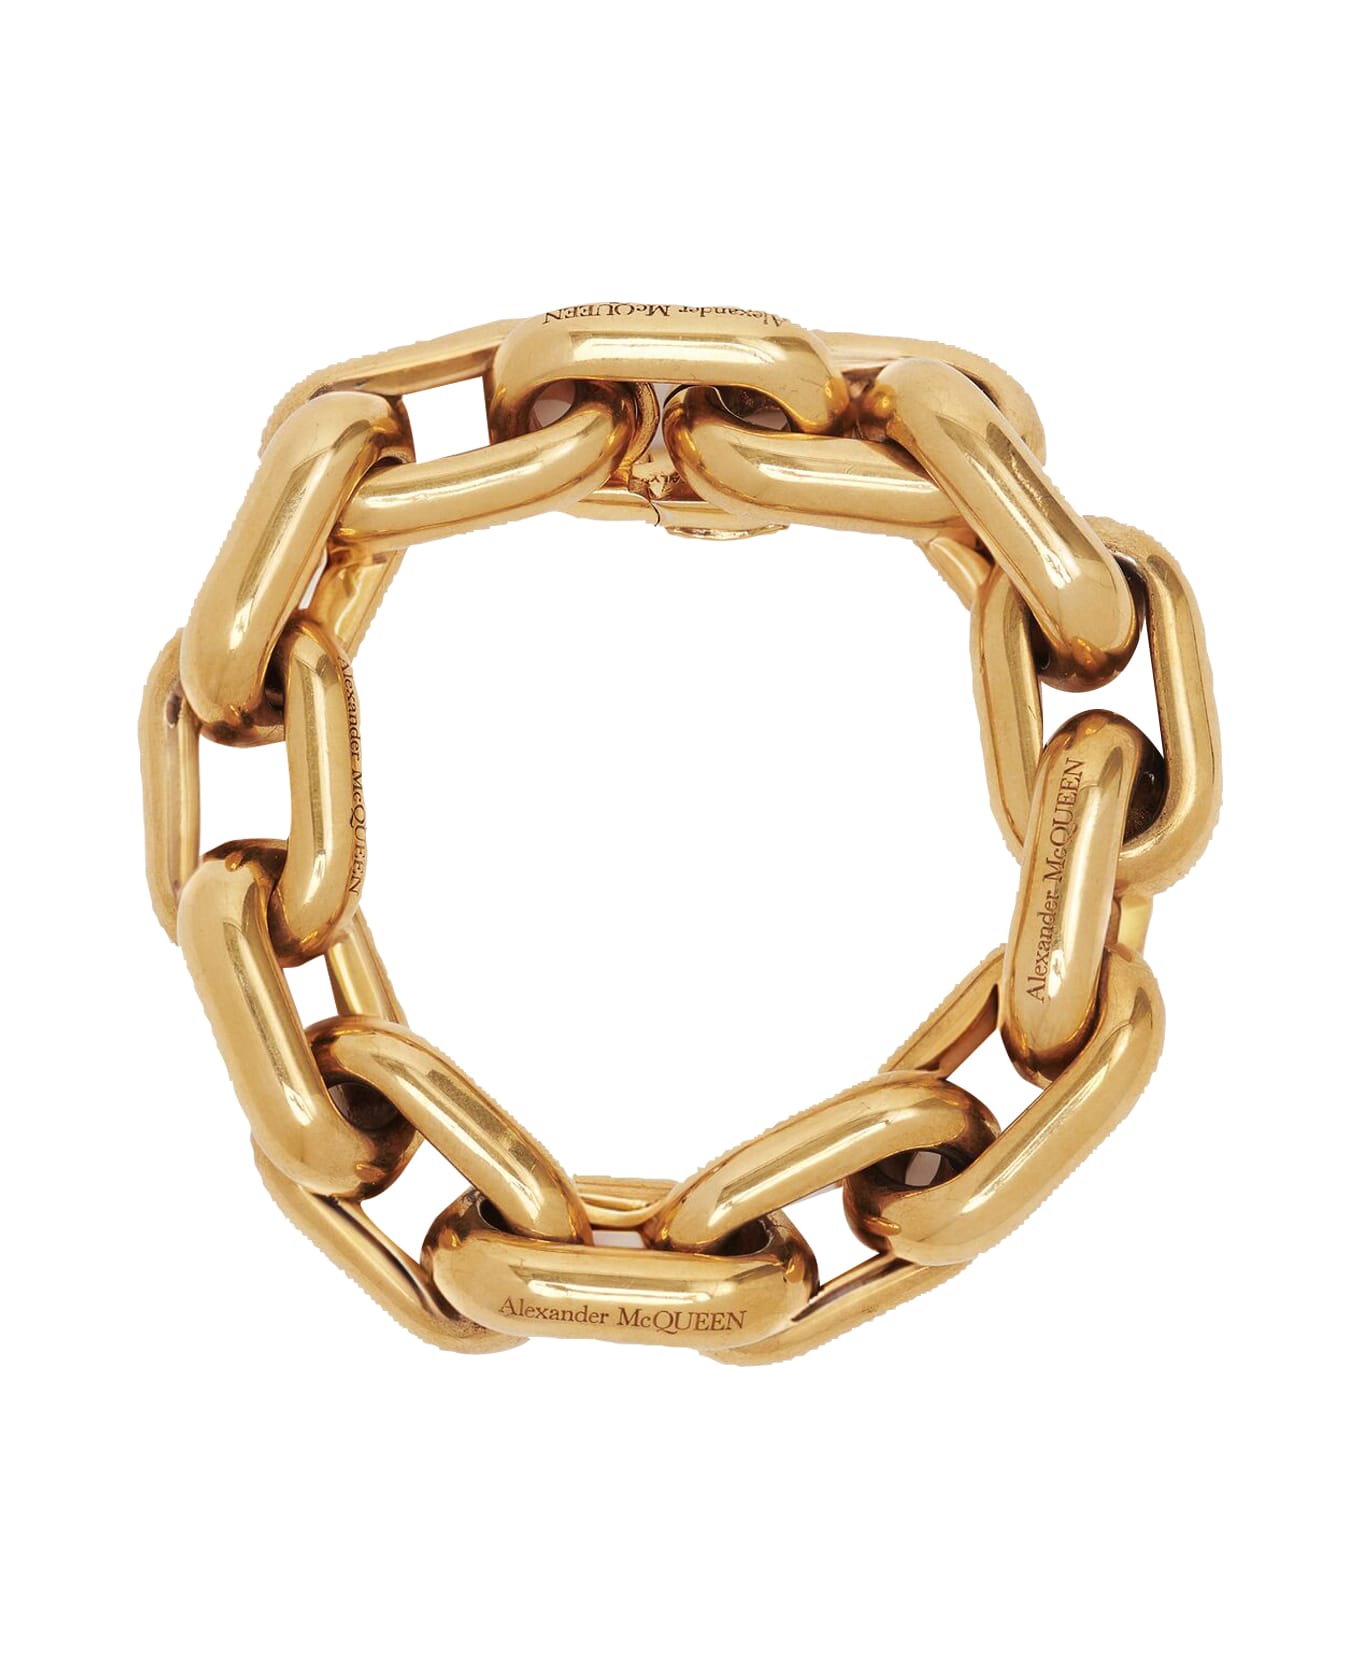 Alexander McQueen Peak Chain Bracelet - Light ant.gold